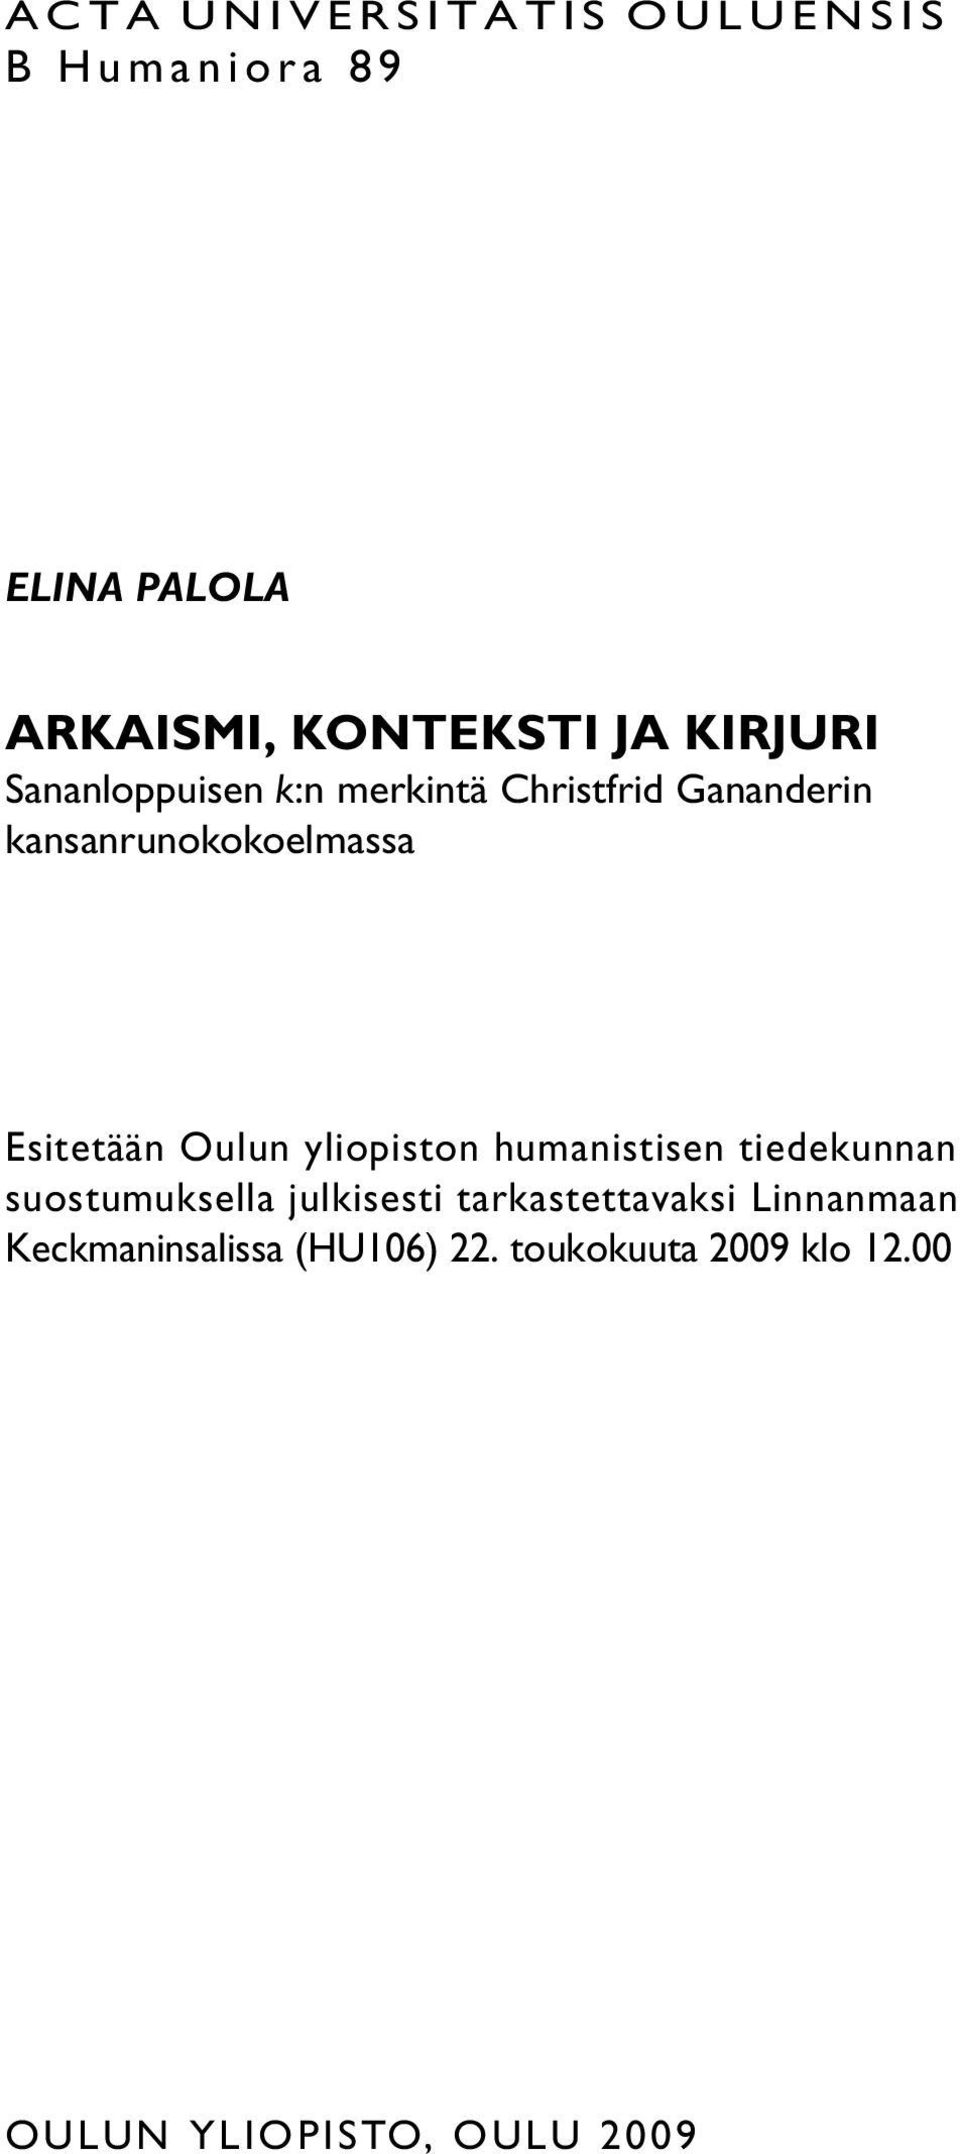 Esitetään Oulun yliopiston humanistisen tiedekunnan suostumuksella julkisesti